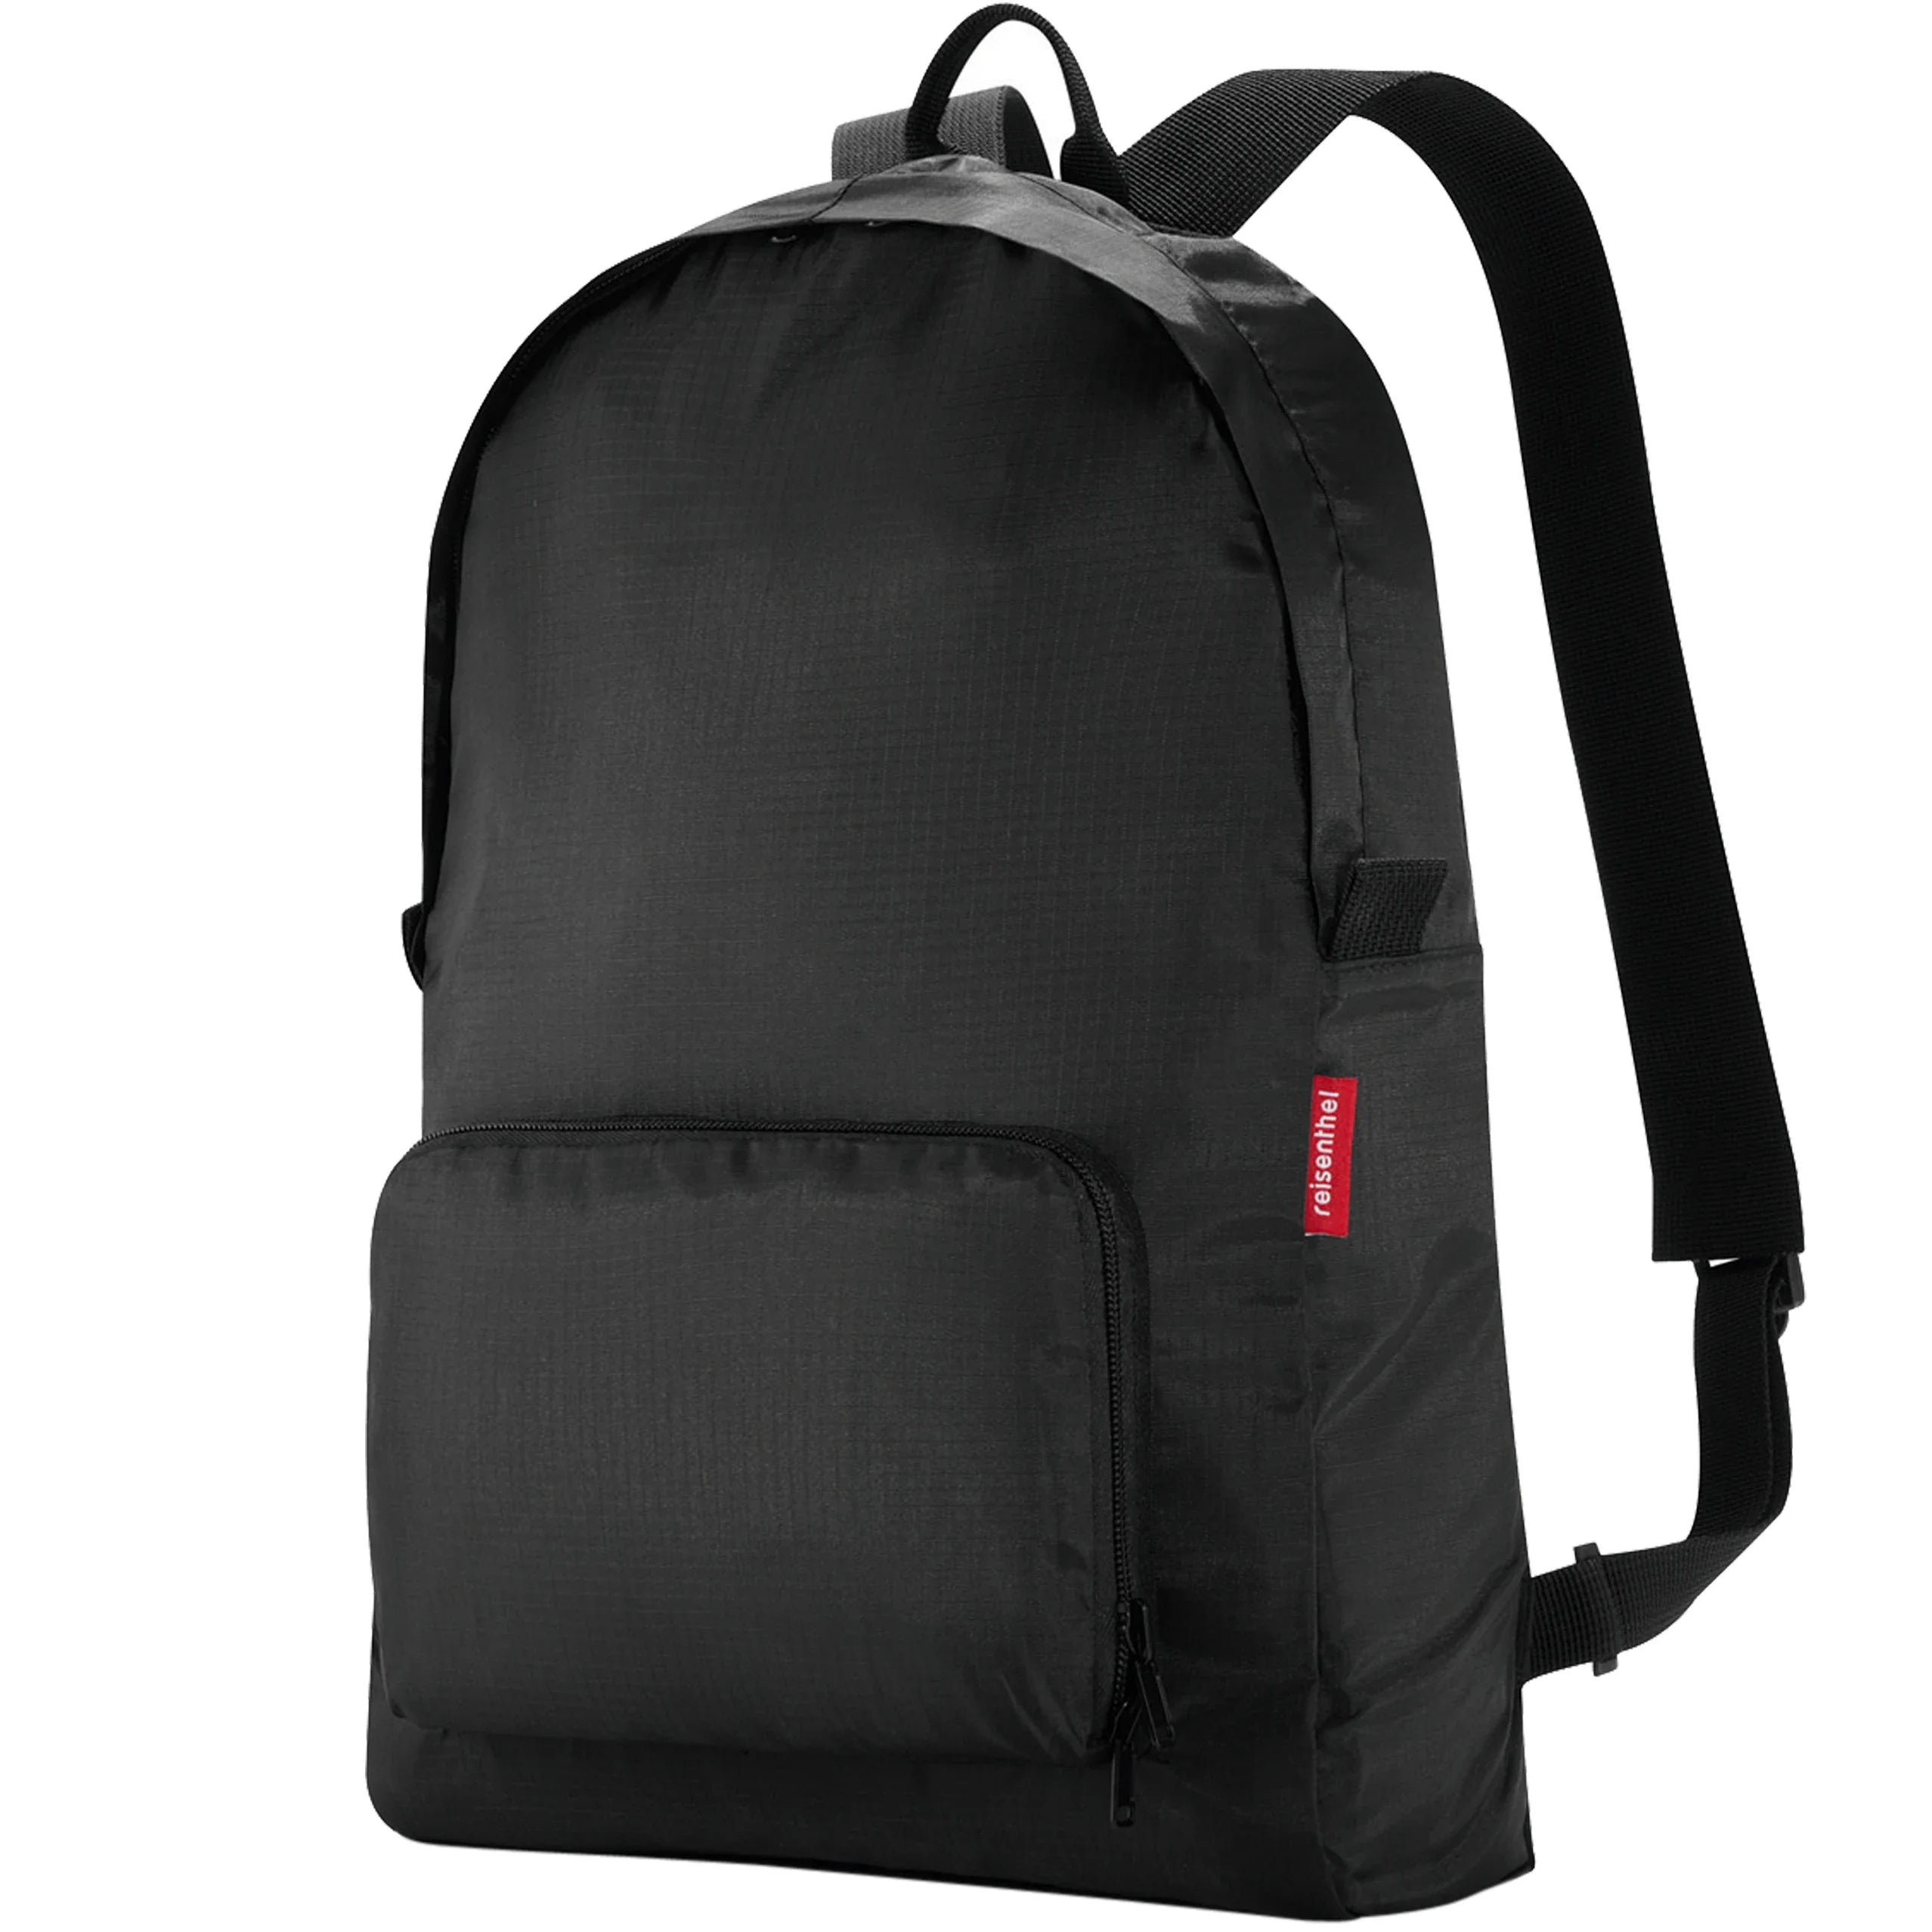 Reisenthel Travelling Mini Maxi sac à dos 45 cm - noir